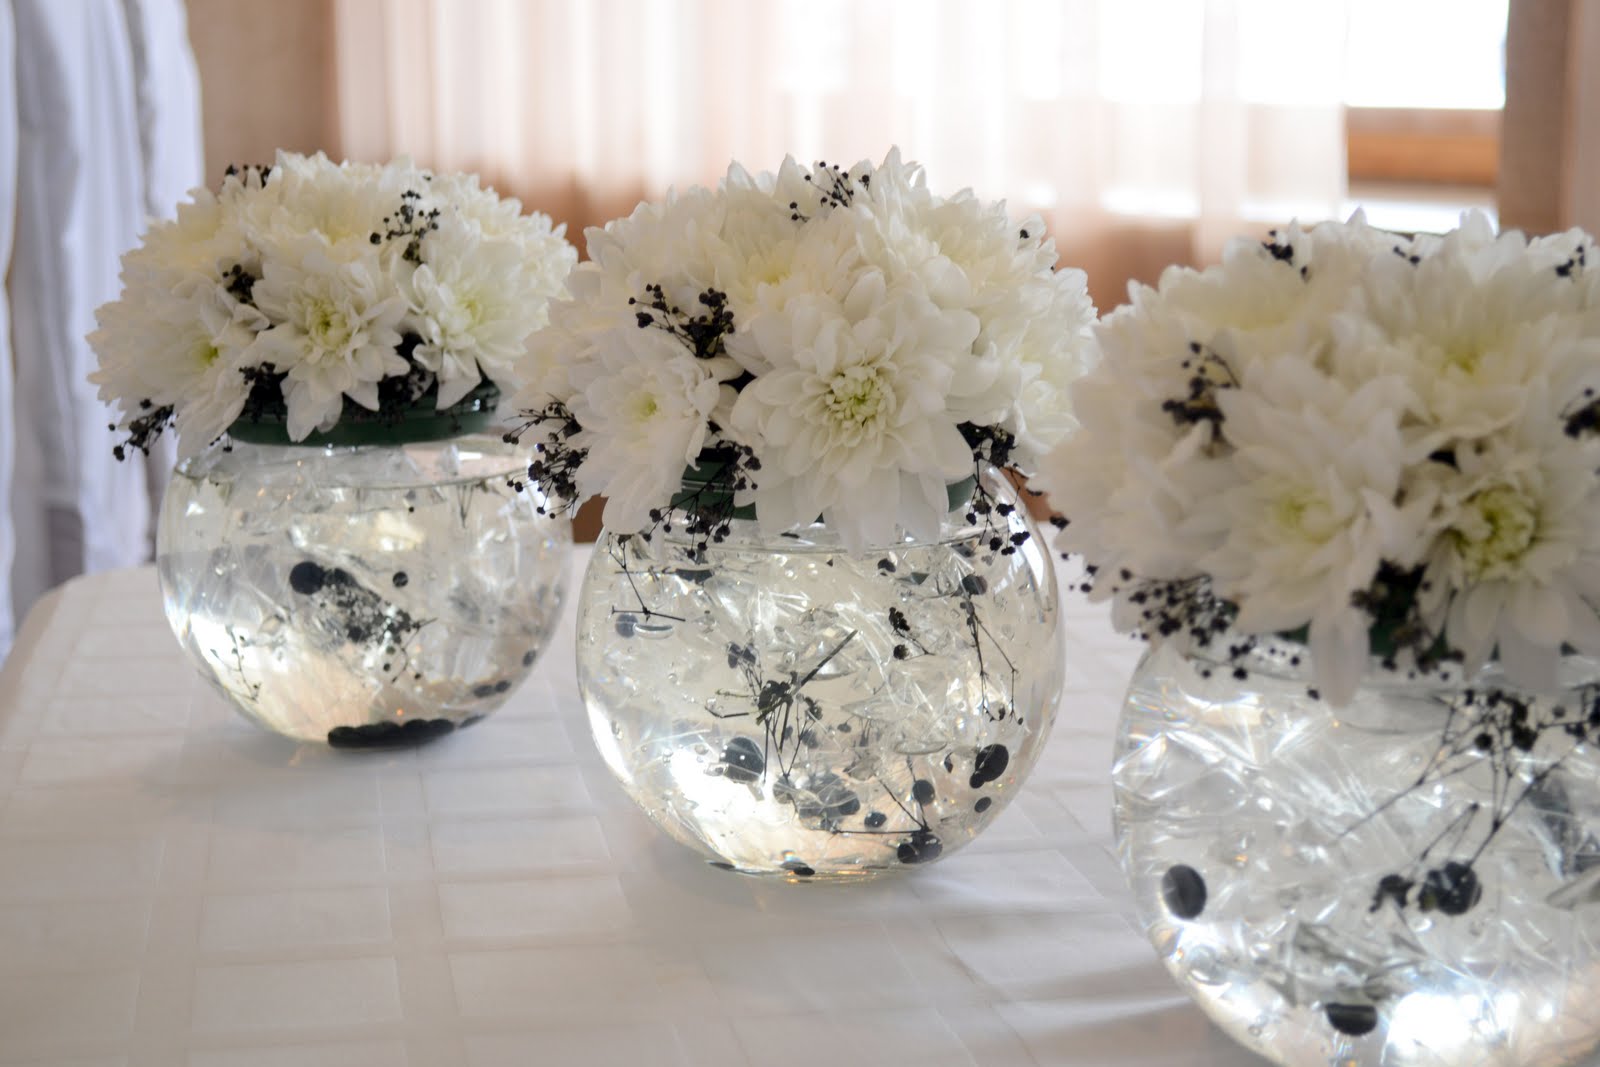 вазы на столы гостей